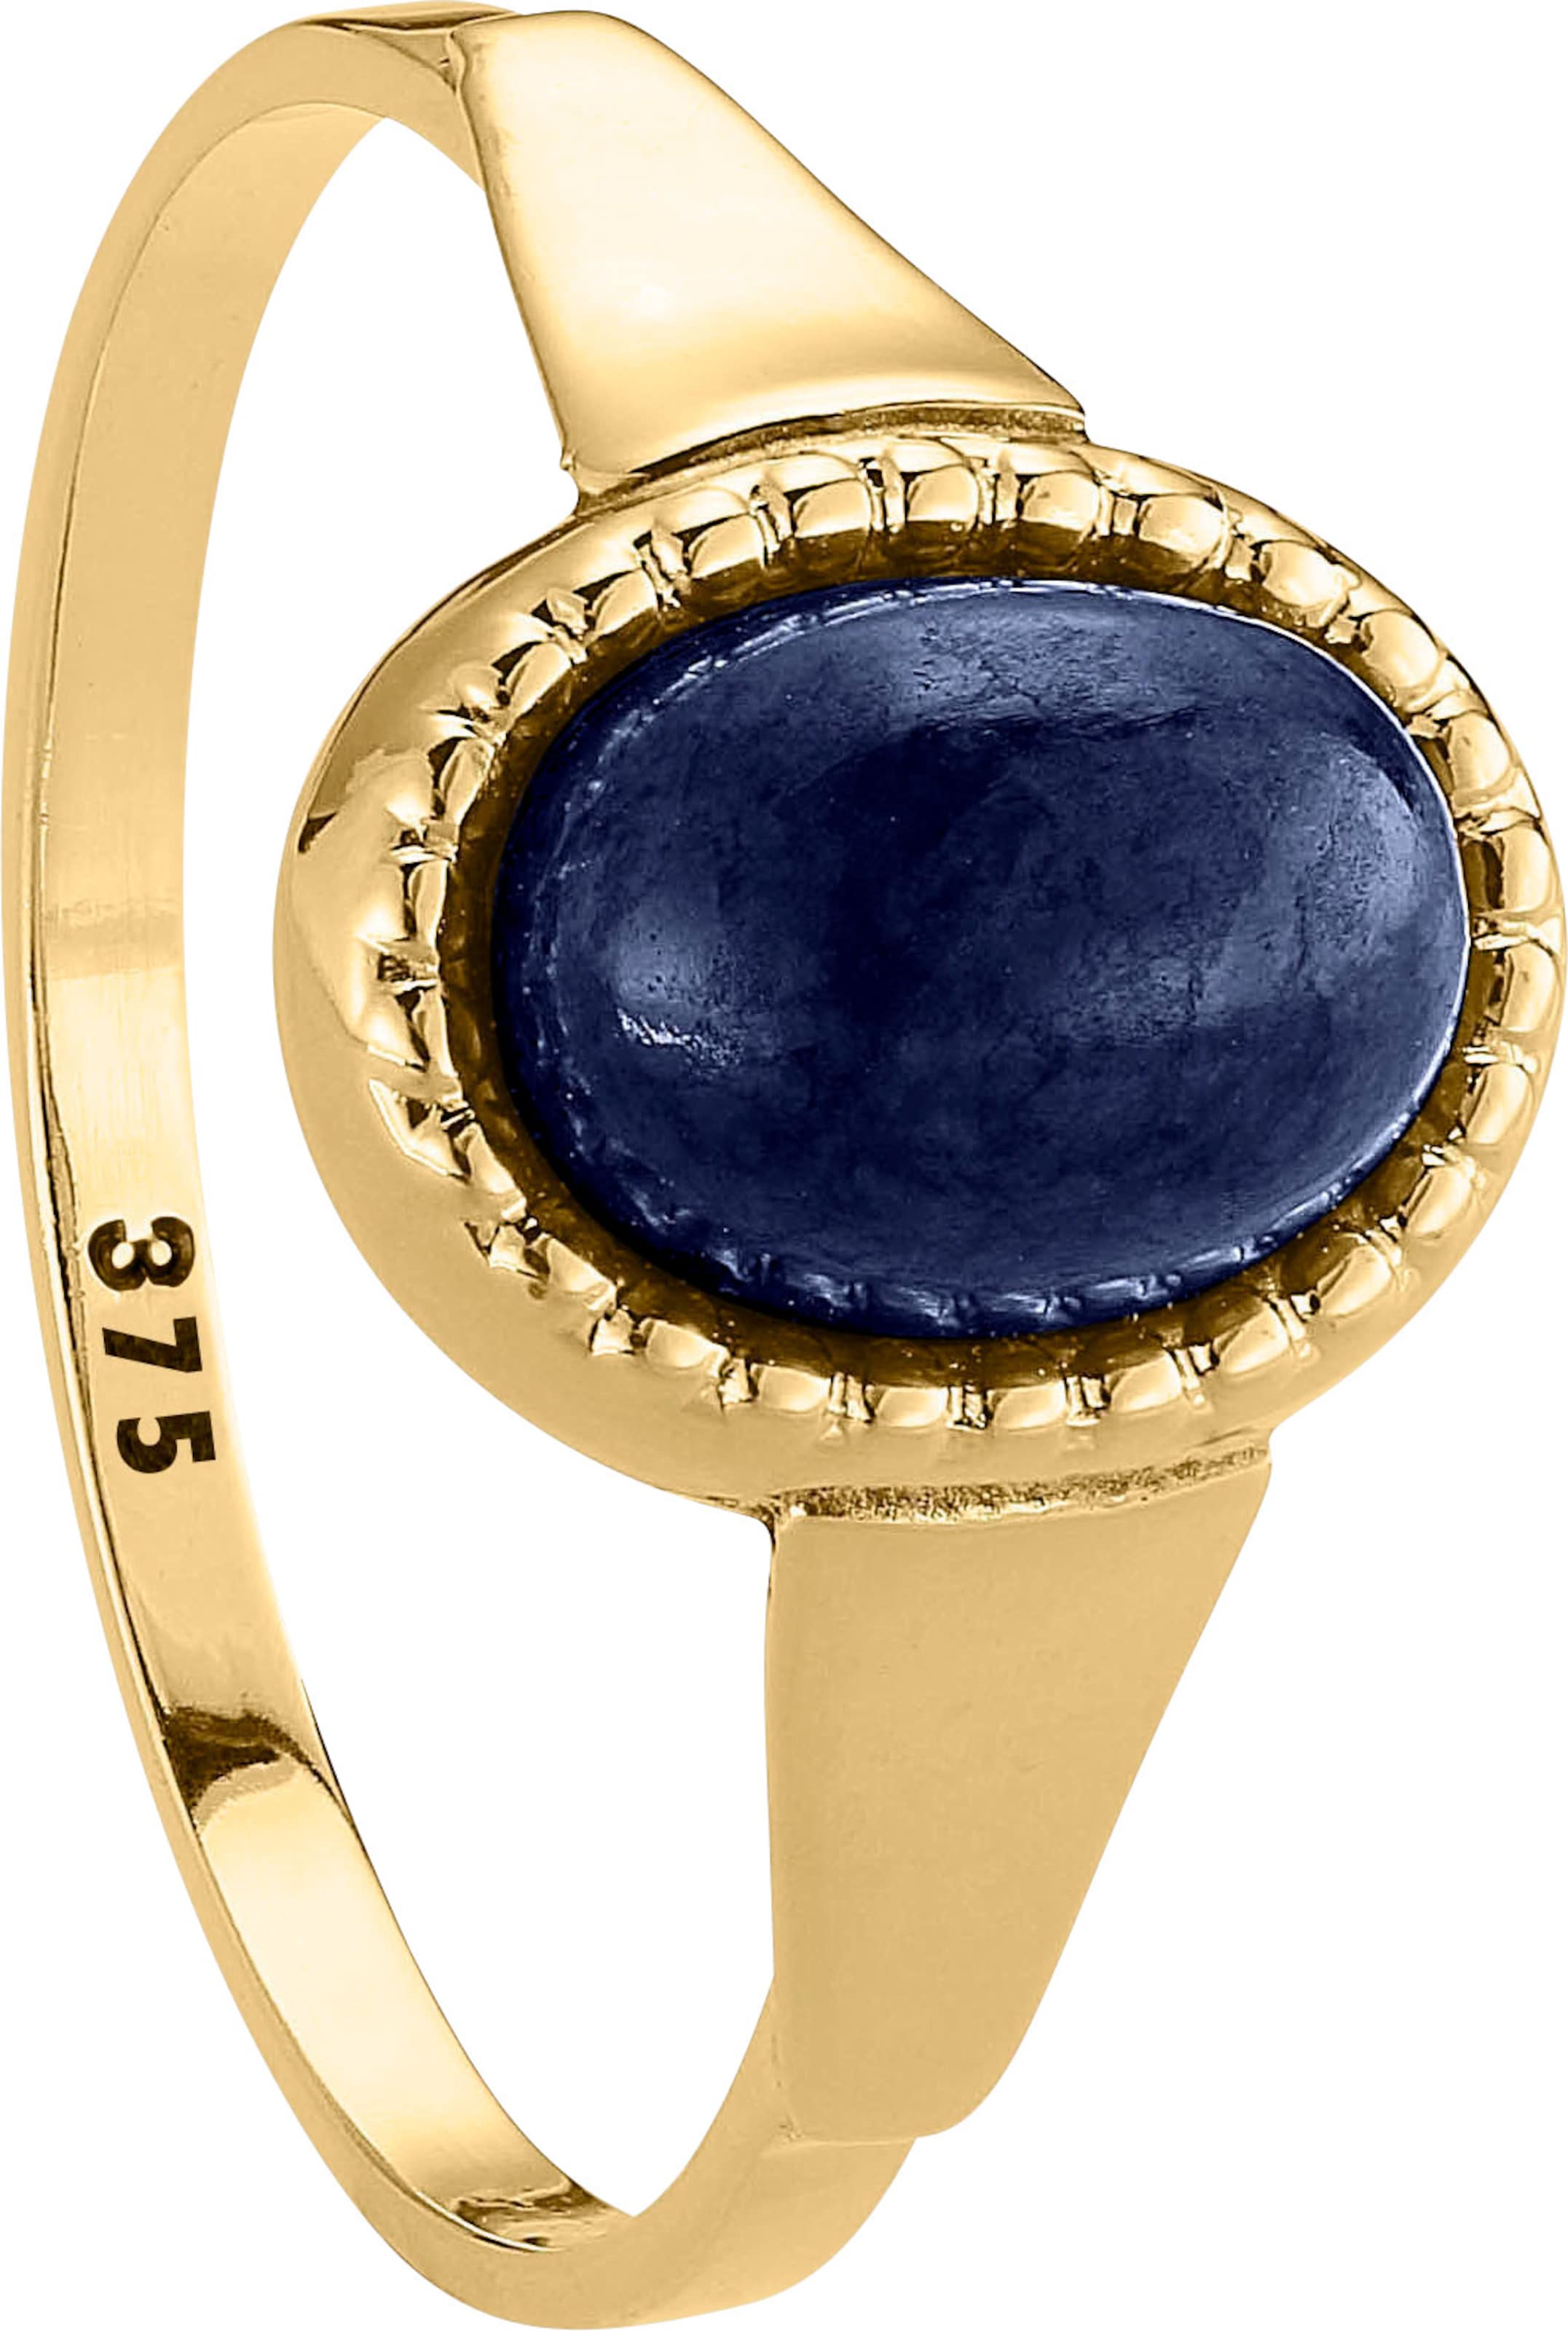 Gold Ring günstig Kaufen-Ring in Gelbgold 375 von heine. Ring in Gelbgold 375 von heine <![CDATA[Ring mit ovalem Lapislazuli – dem Stein des Himmels. Ca. 8x6 mm. Aus 375er Gelbgold.]]>. 